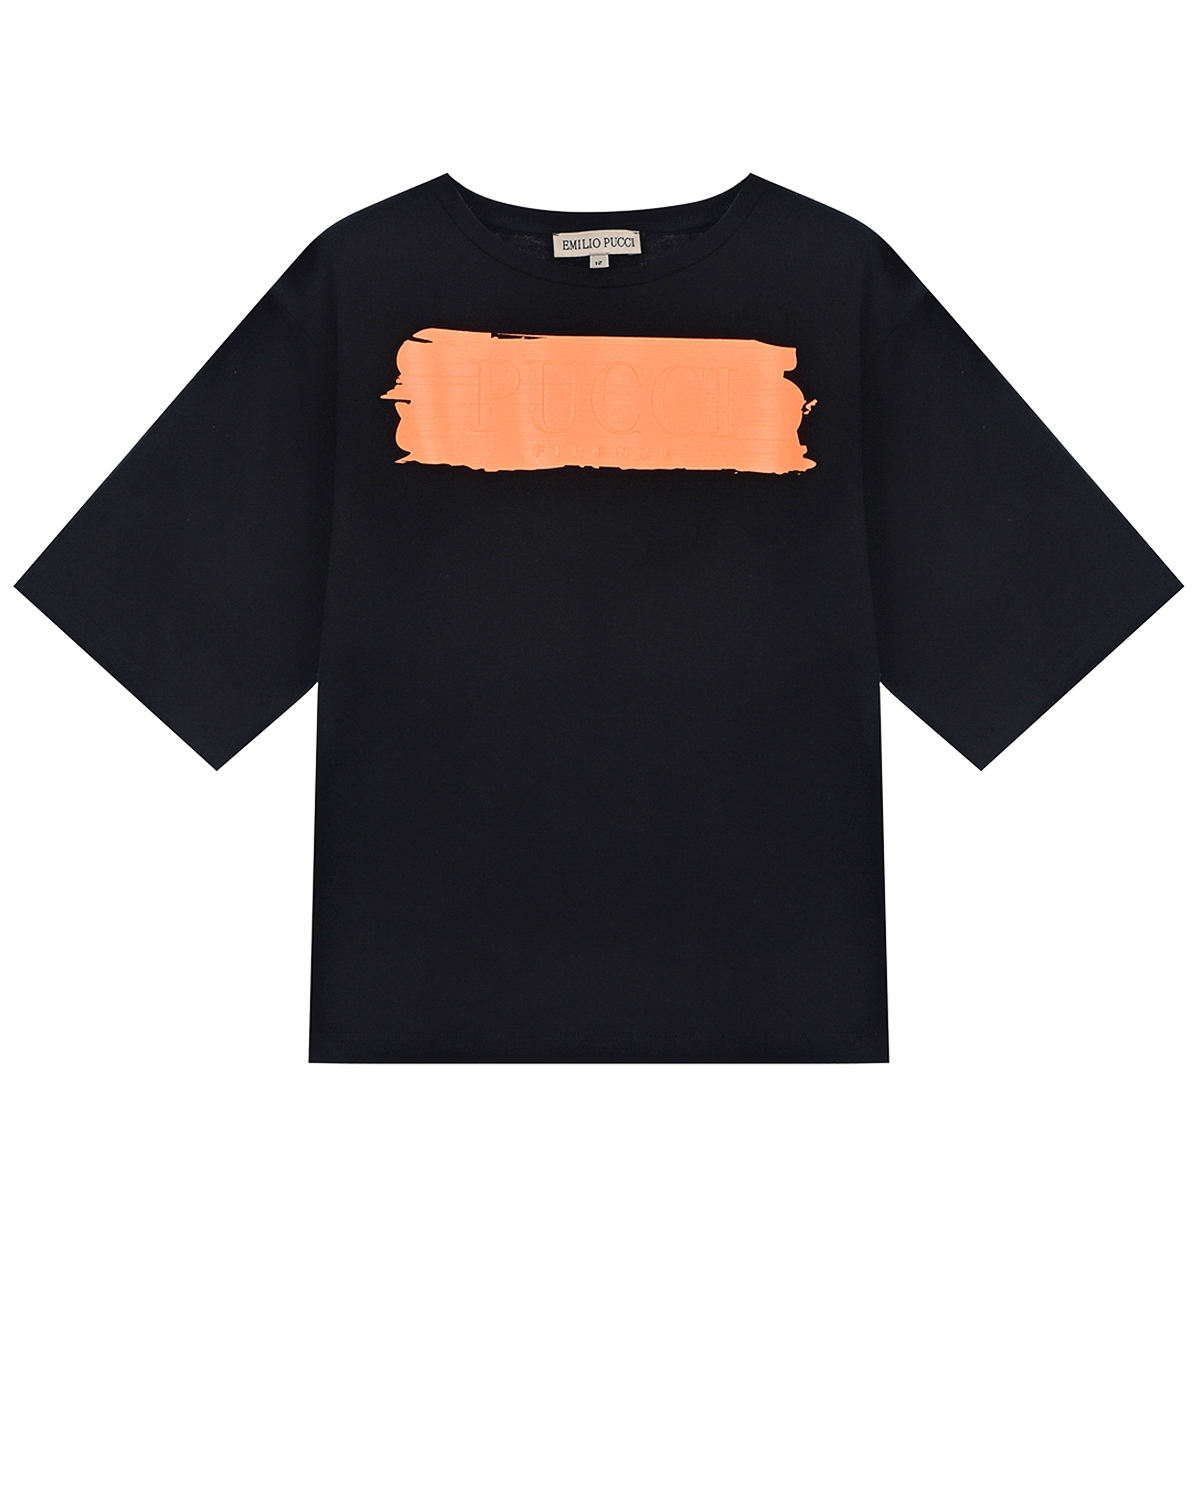 Черная футболка с оранжевой полосой Emilio Pucci